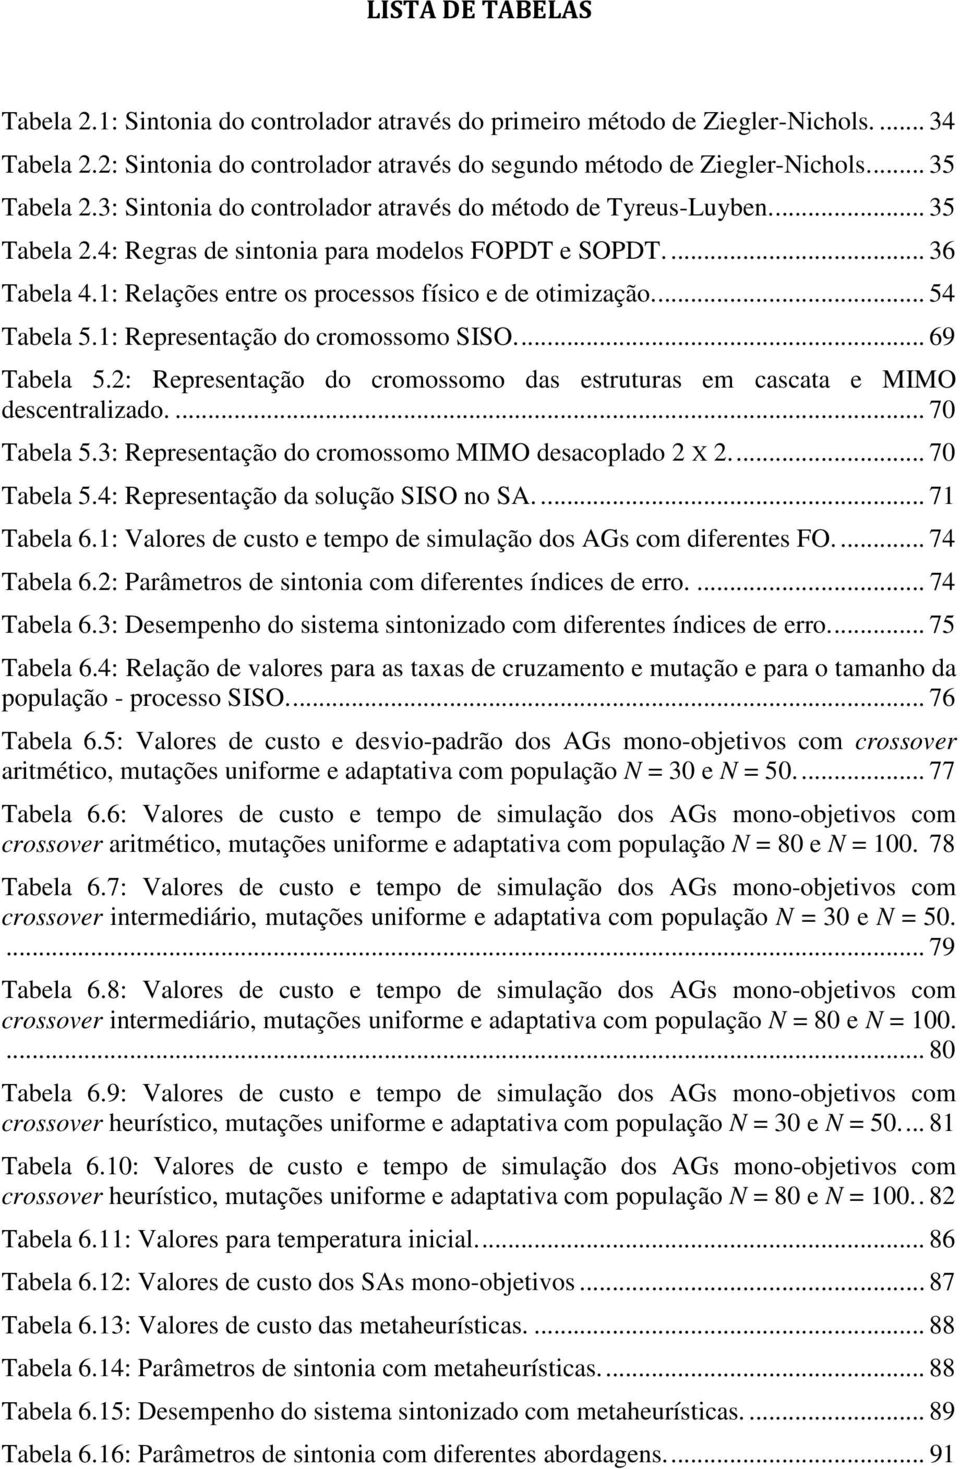 ... 54 Tabela 5.1: Representação do cromossomo SISO.... 69 Tabela 5.2: Representação do cromossomo das estruturas em cascata e MIMO descentralizado.... 70 Tabela 5.